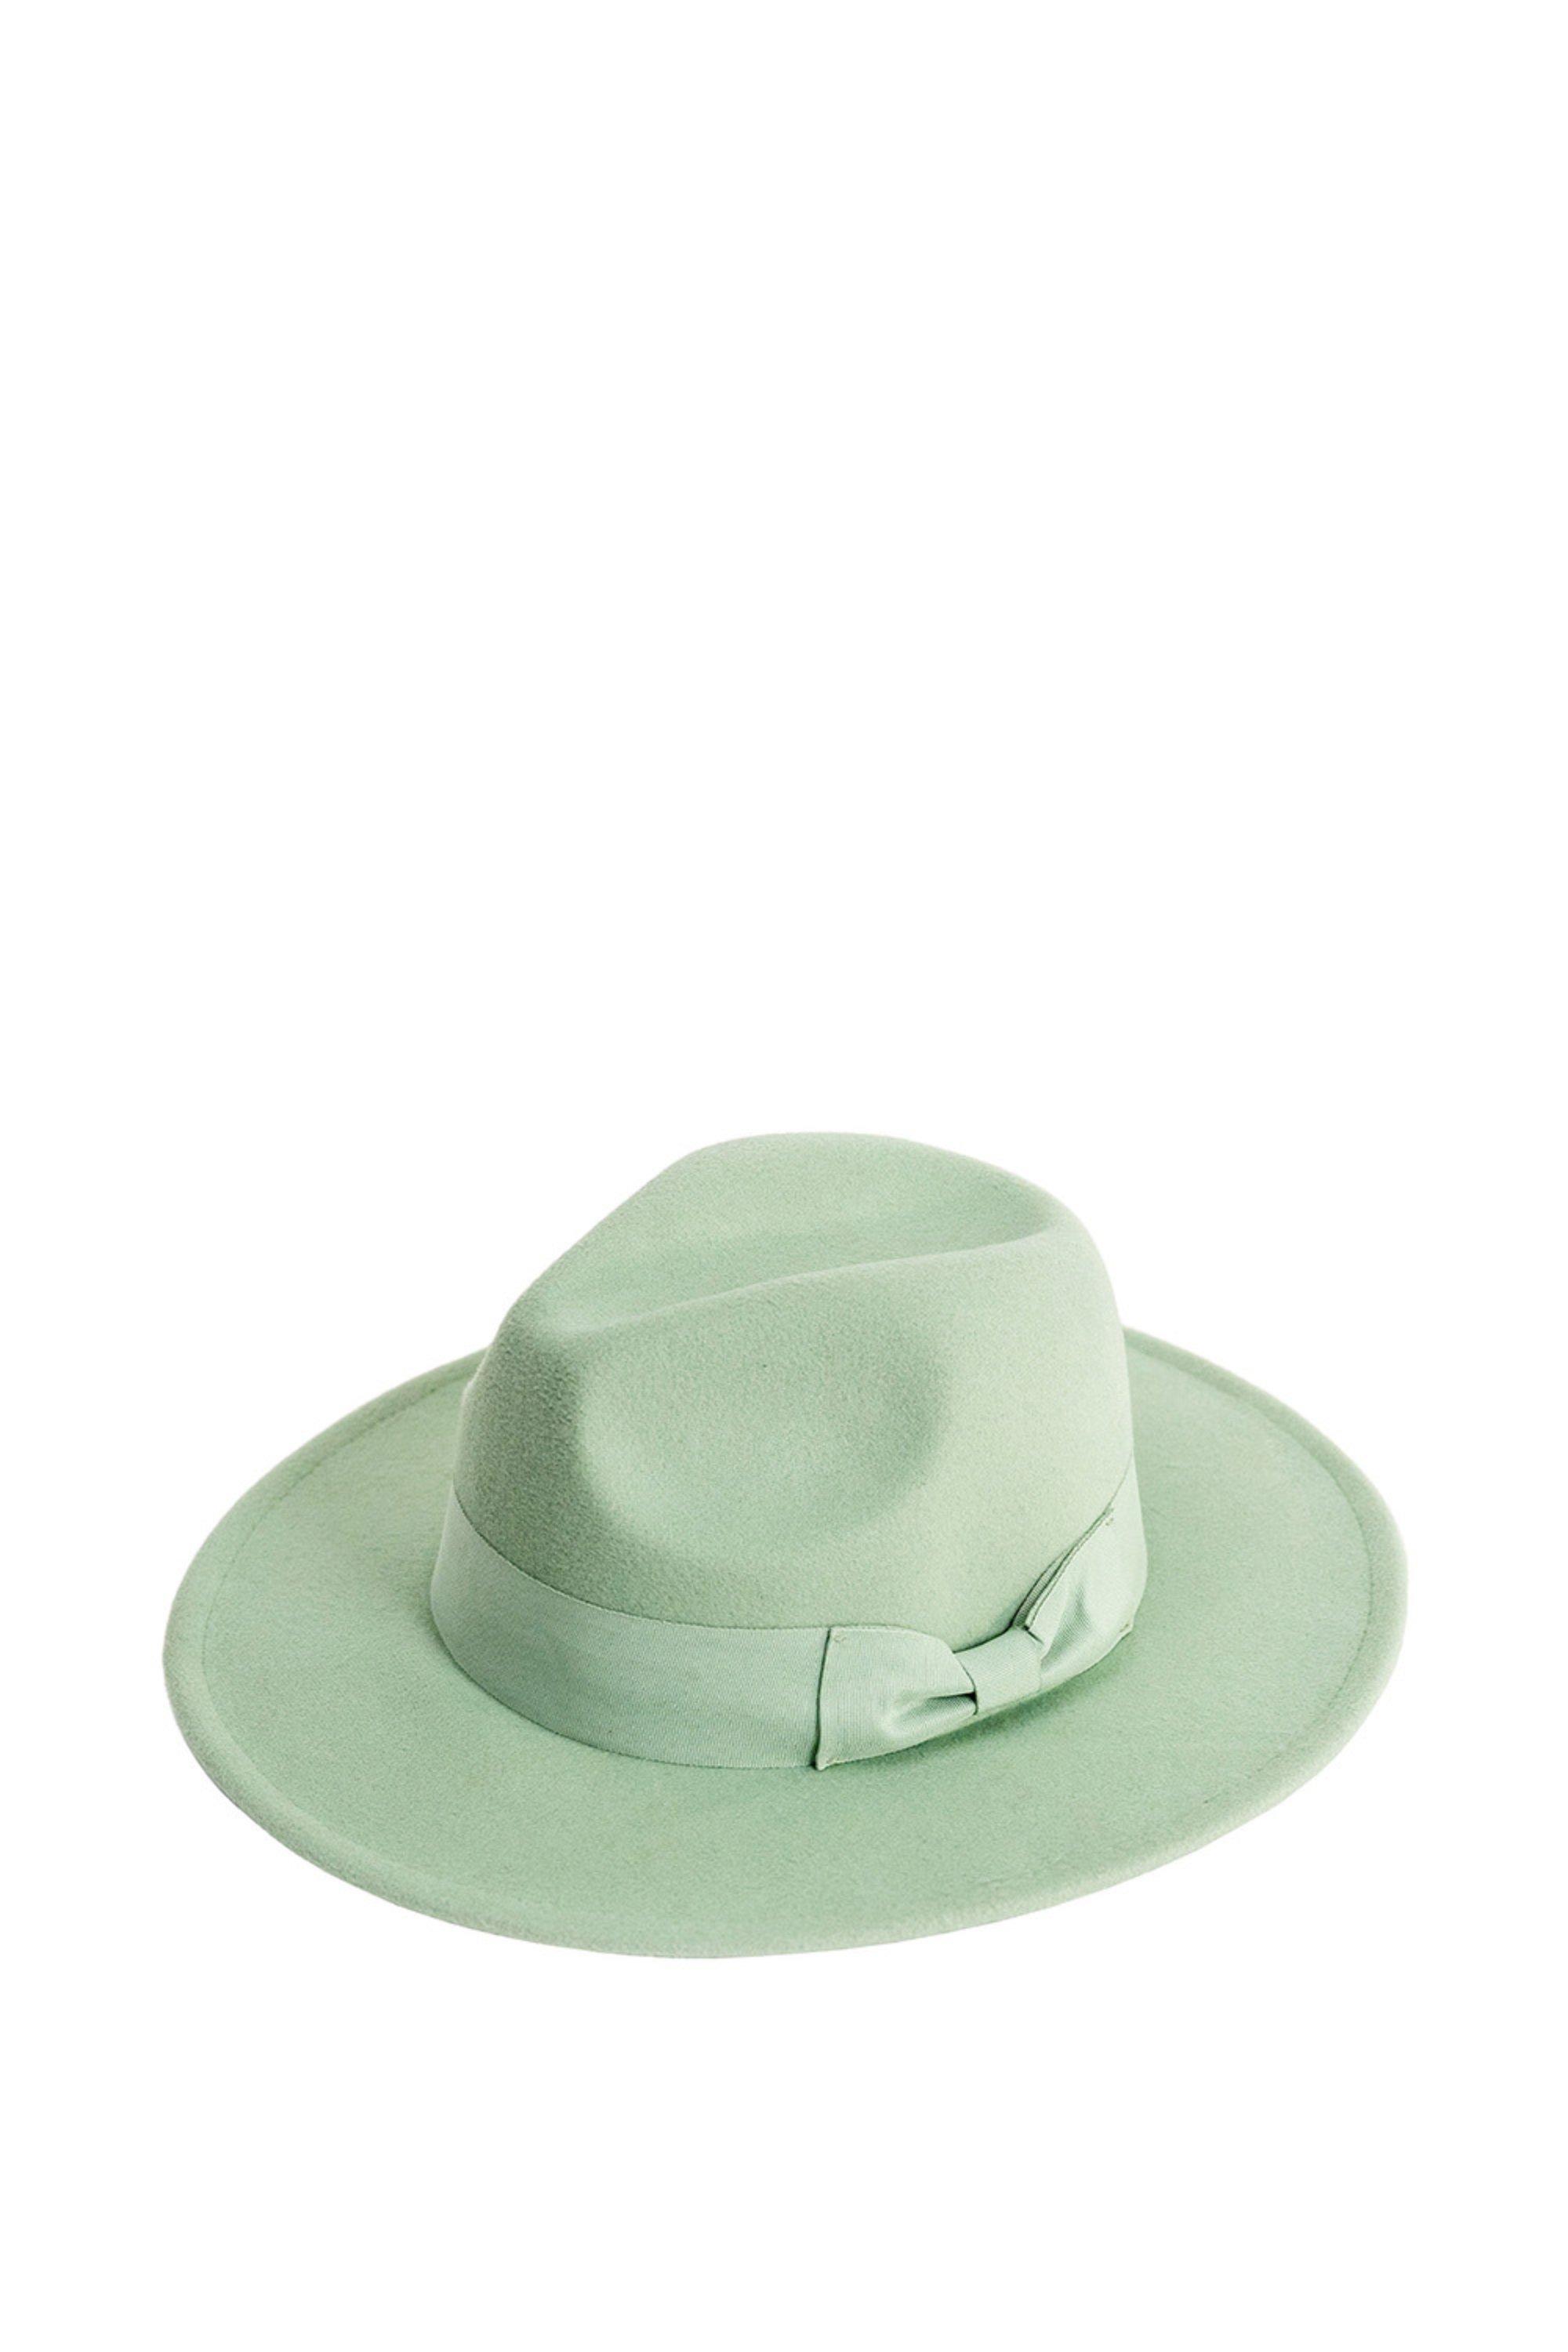 Регулируемая шляпа-федора с бантом My Accessories London, зеленый